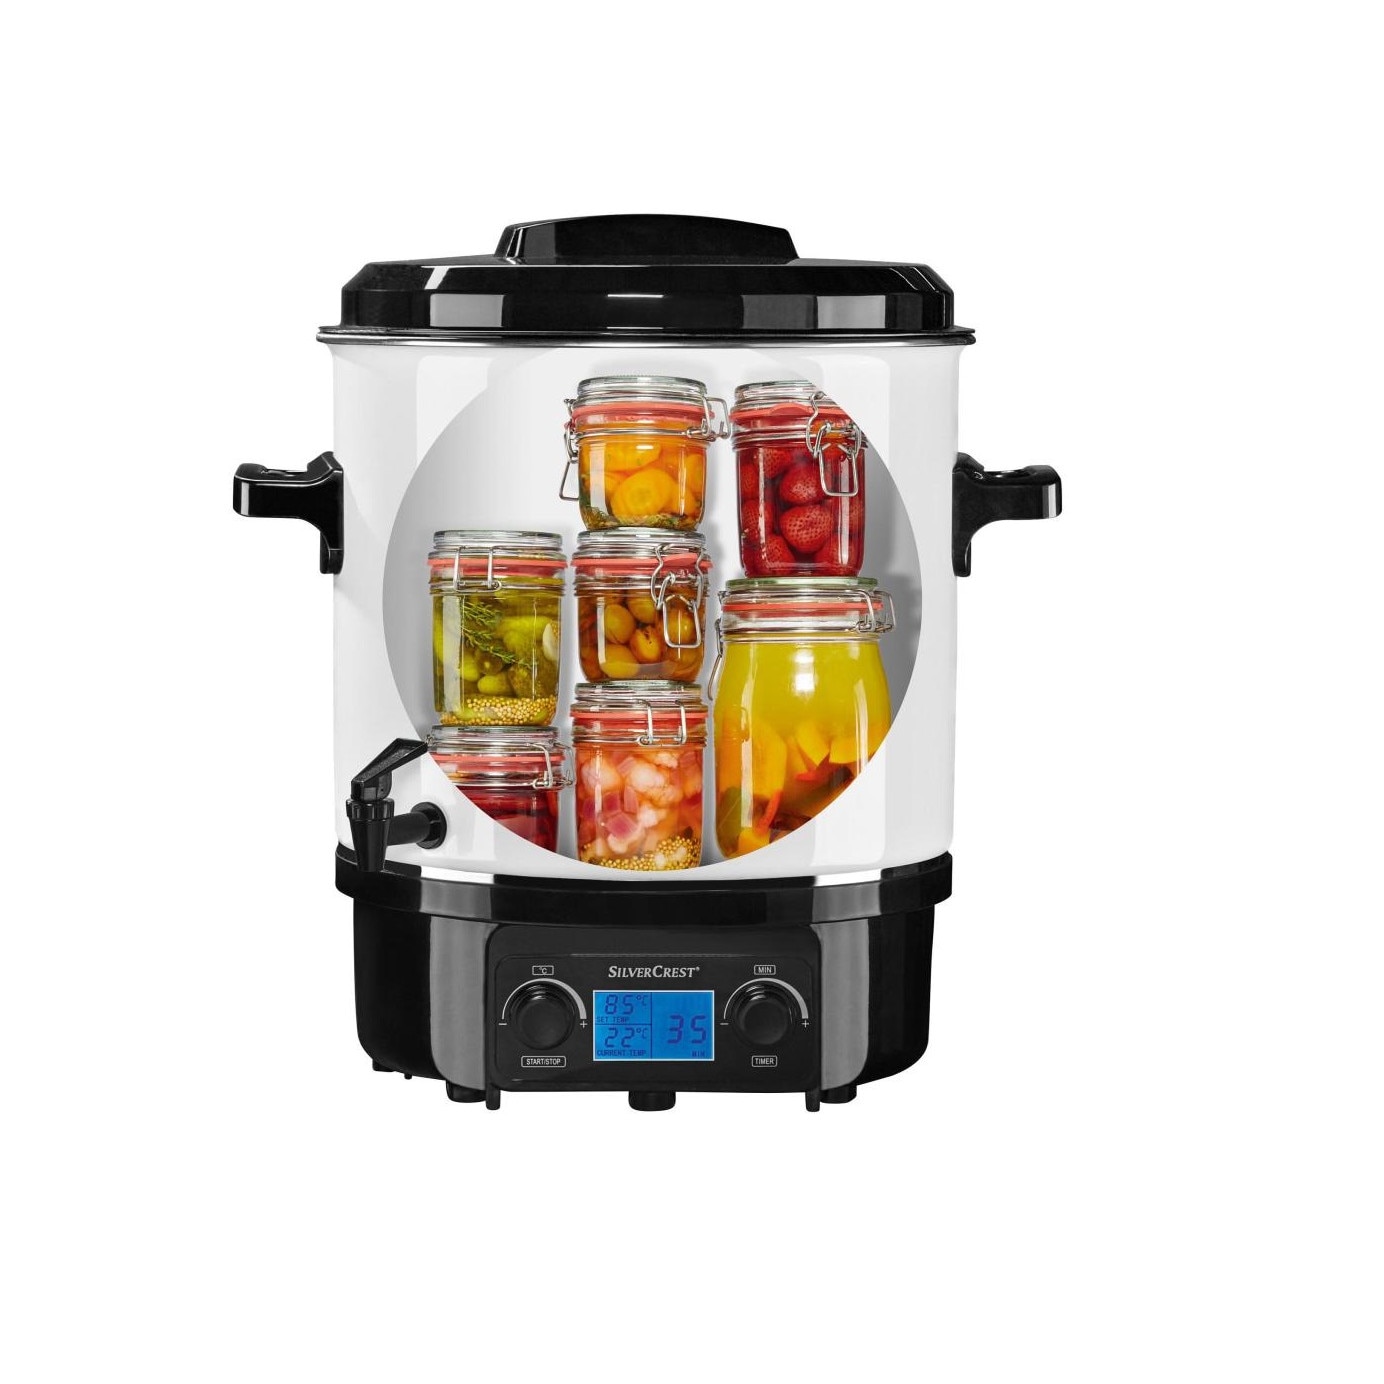 SilverCrest SEAD 1800 A1 digitális zománcozott, melegentartó adagoló, forró befőzőautomata, és 27L készítő 1800W ital forraltbor LCD / kijelzős, tea edény és